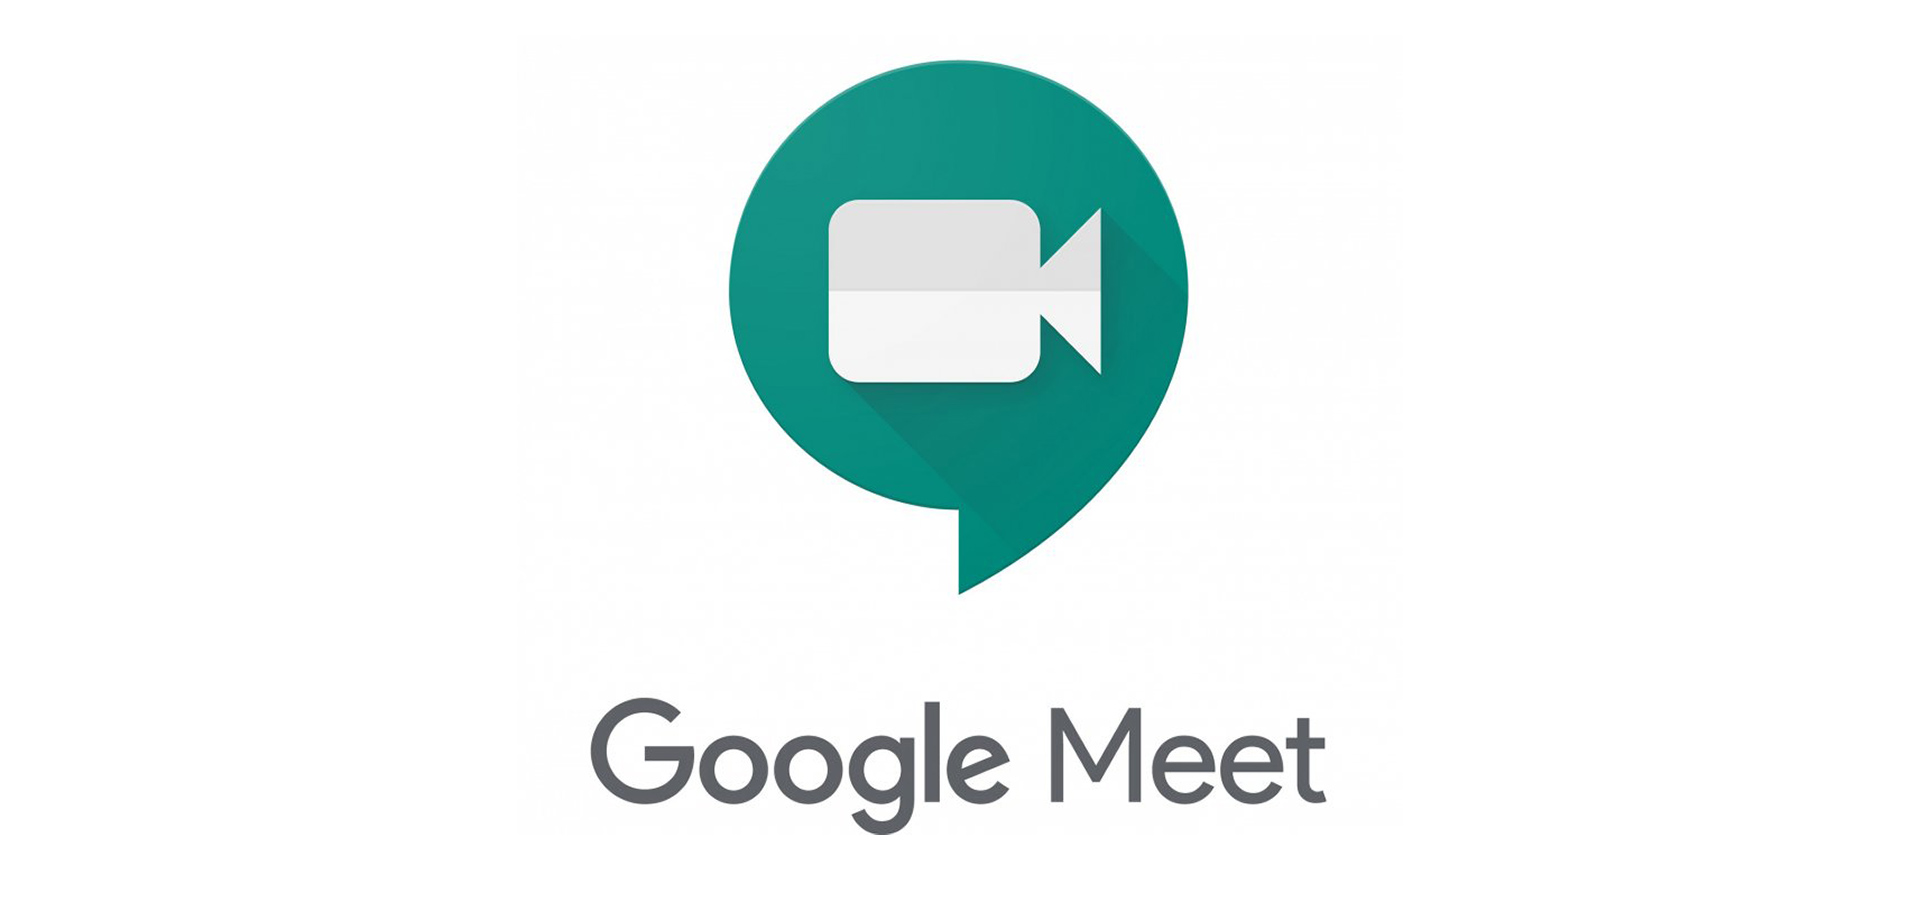 Google Meet يدعم ردود فعل الرموز التعبيرية